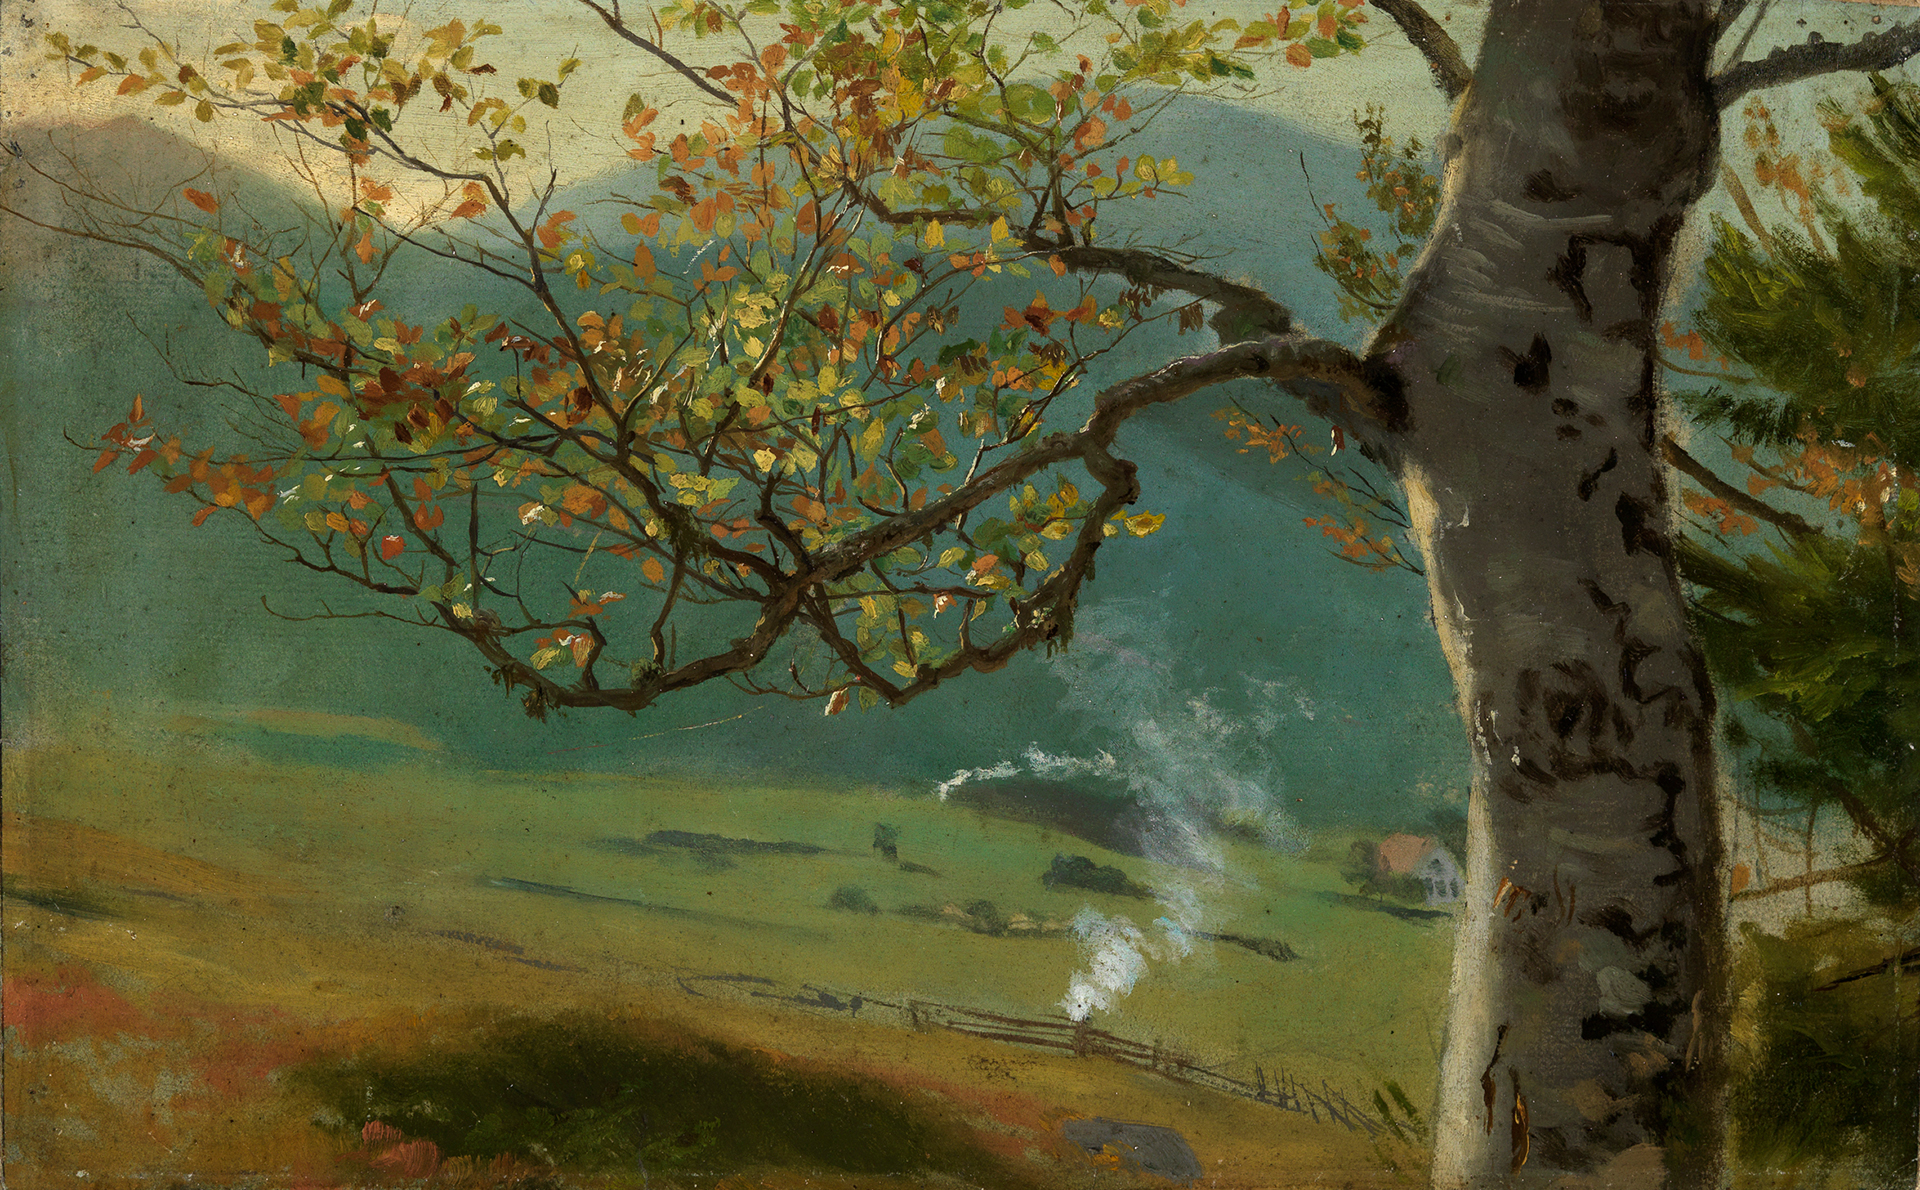 Im Vordergrund des Gemäldes ist ein herbstlich gefärbter Baum zu sehen, im Hintergrund lässt sich ein kleines Dorf erahnen